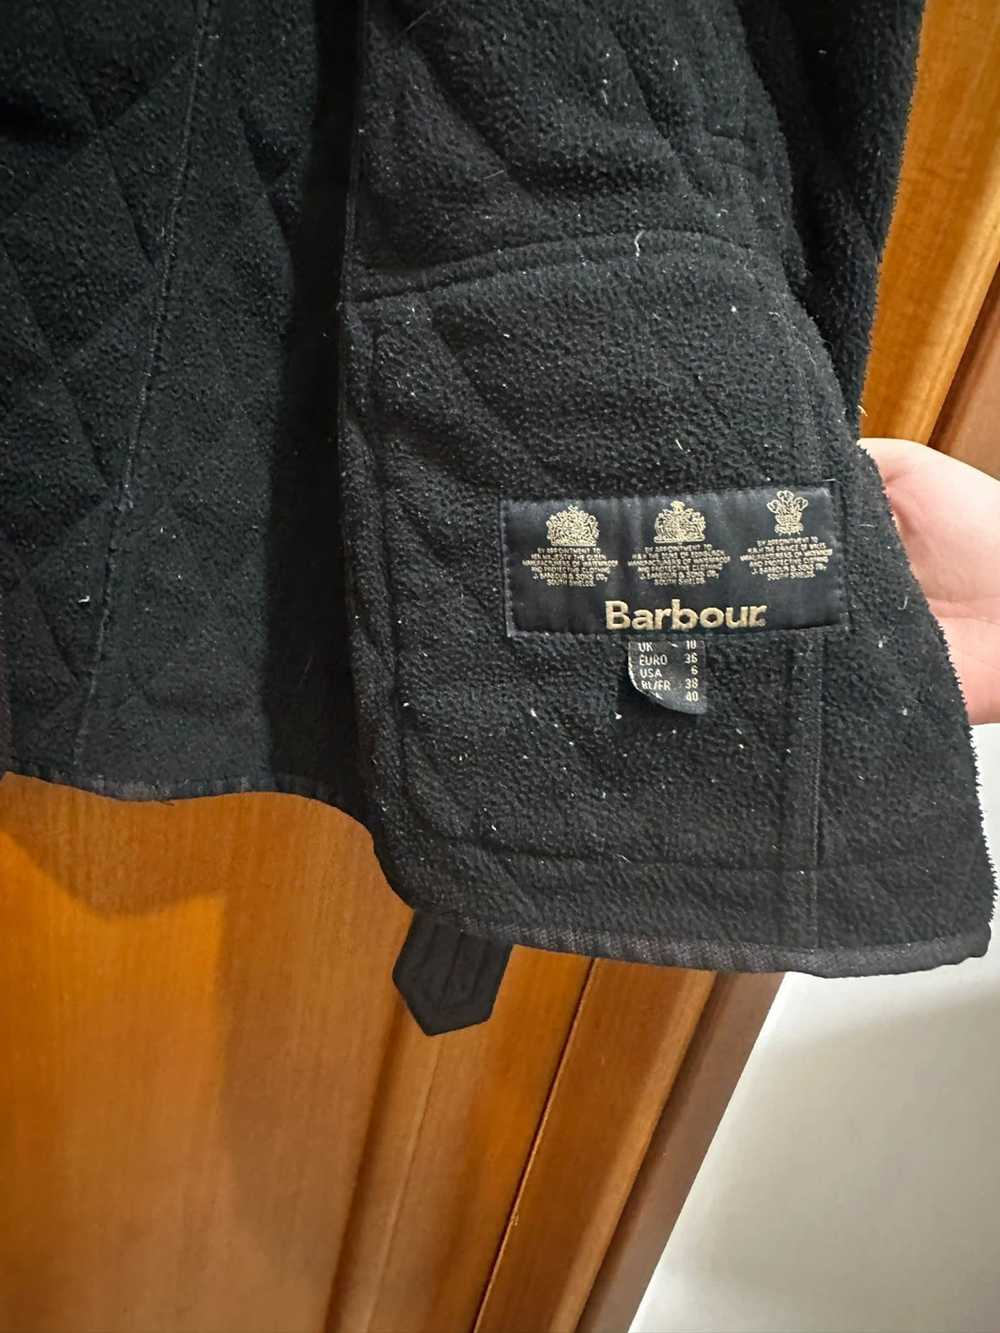 Barbour Barbour Belted Jacket - image 3